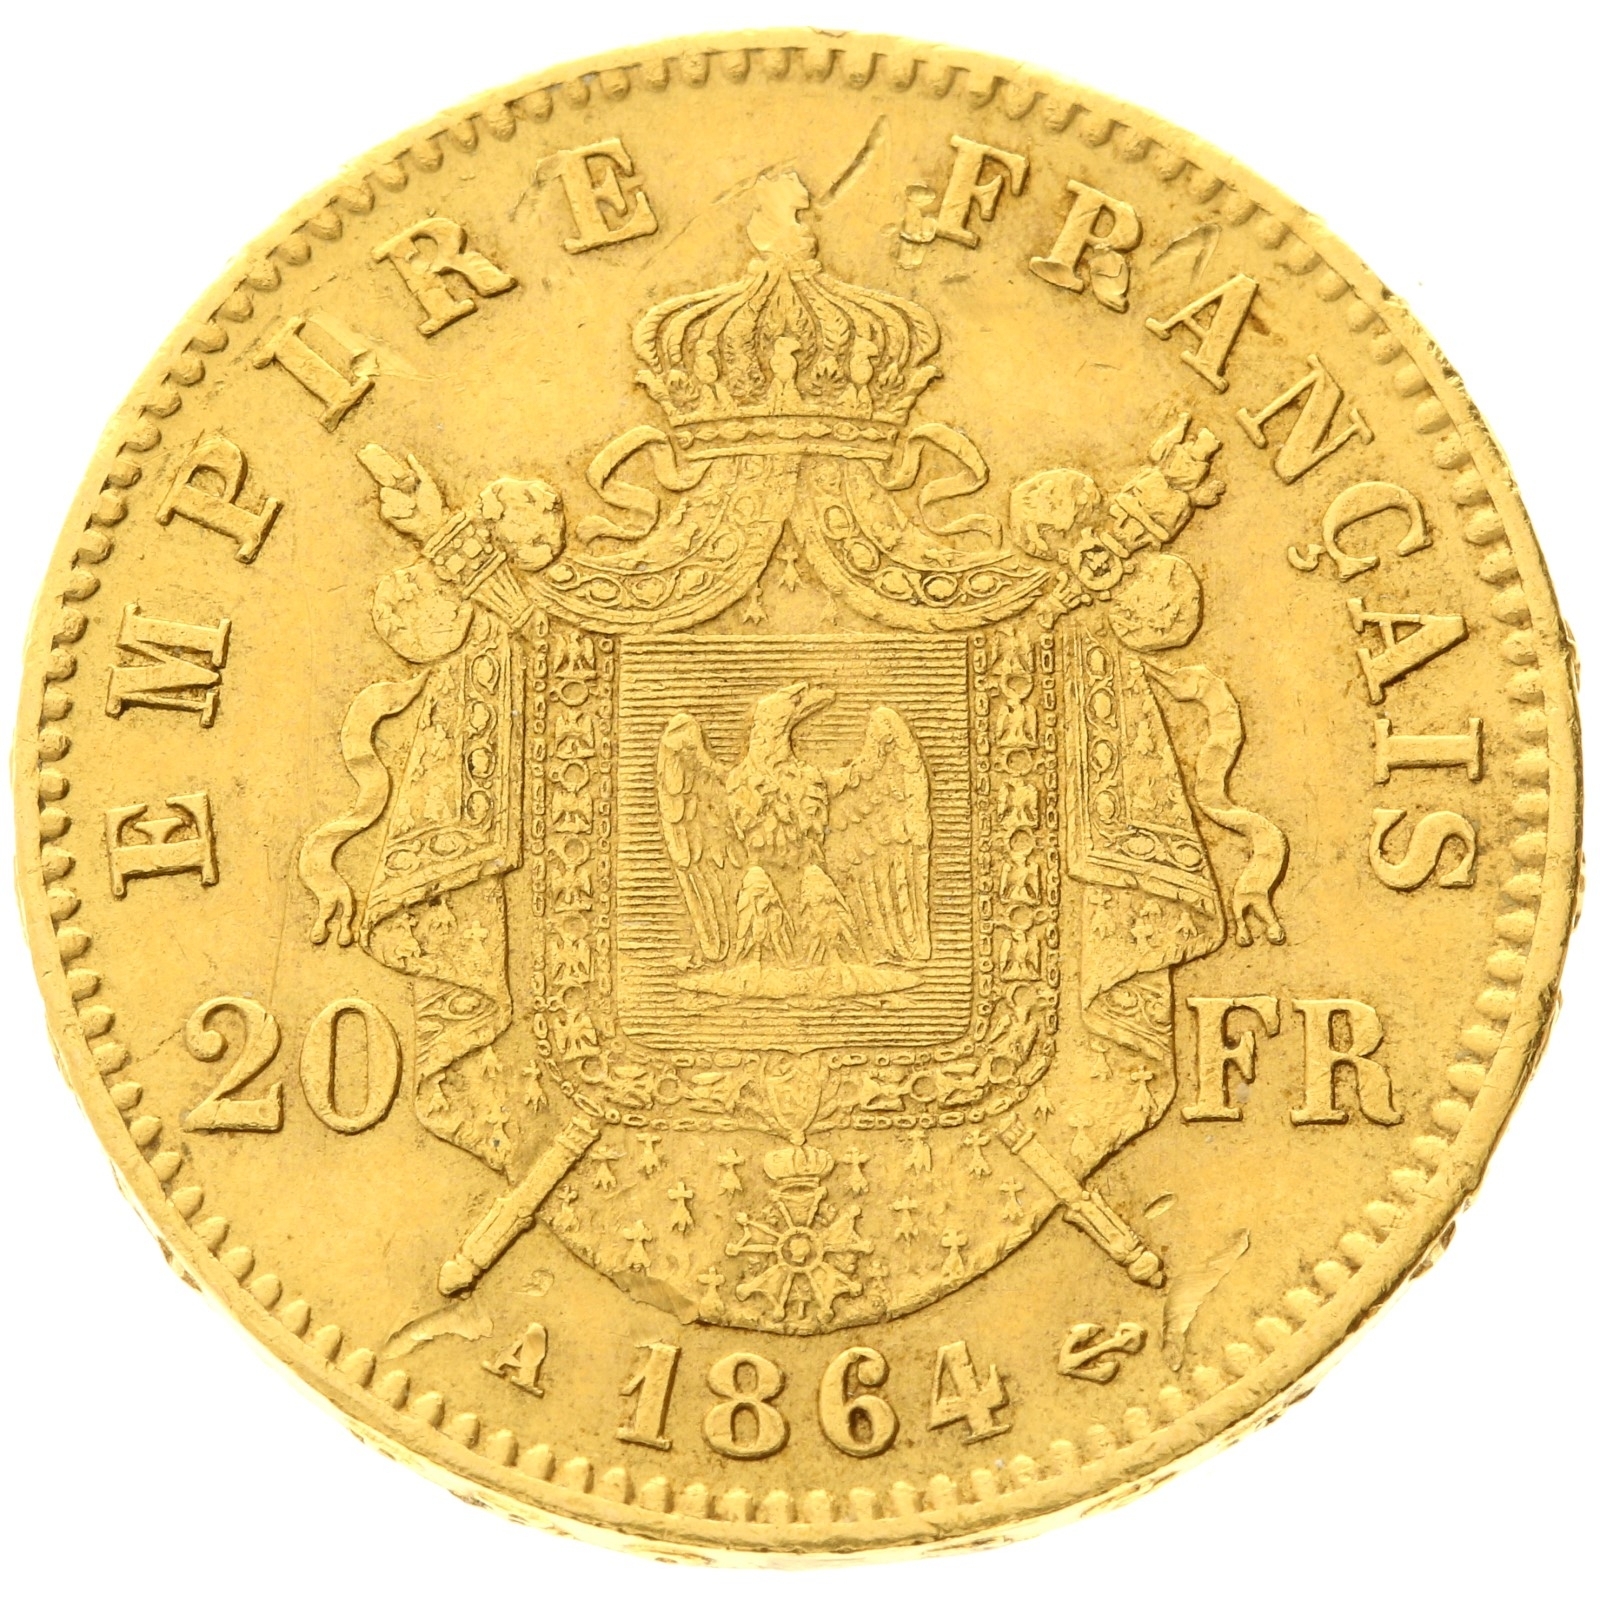 France - 20 francs - 1864 - A - Napoleon III